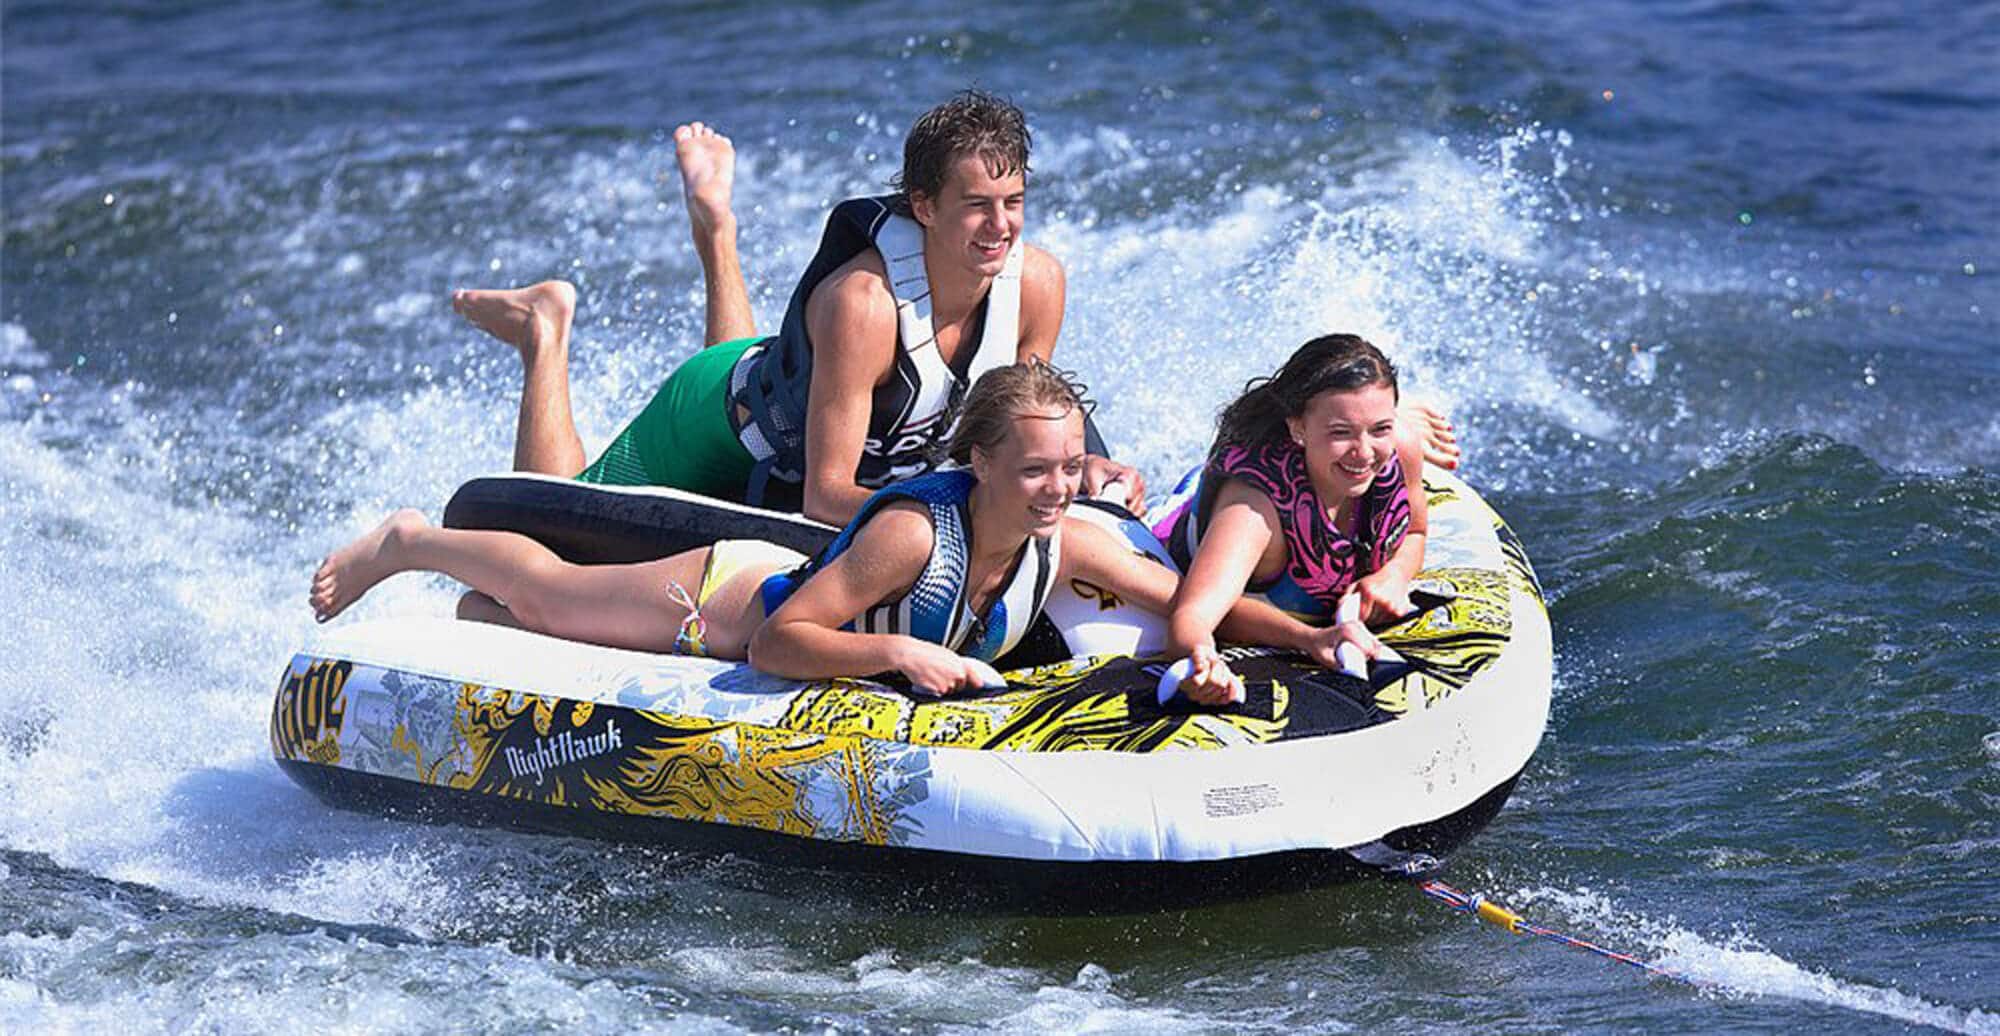 A group of teenagers enjoying watersport tubing on Lake Geneva